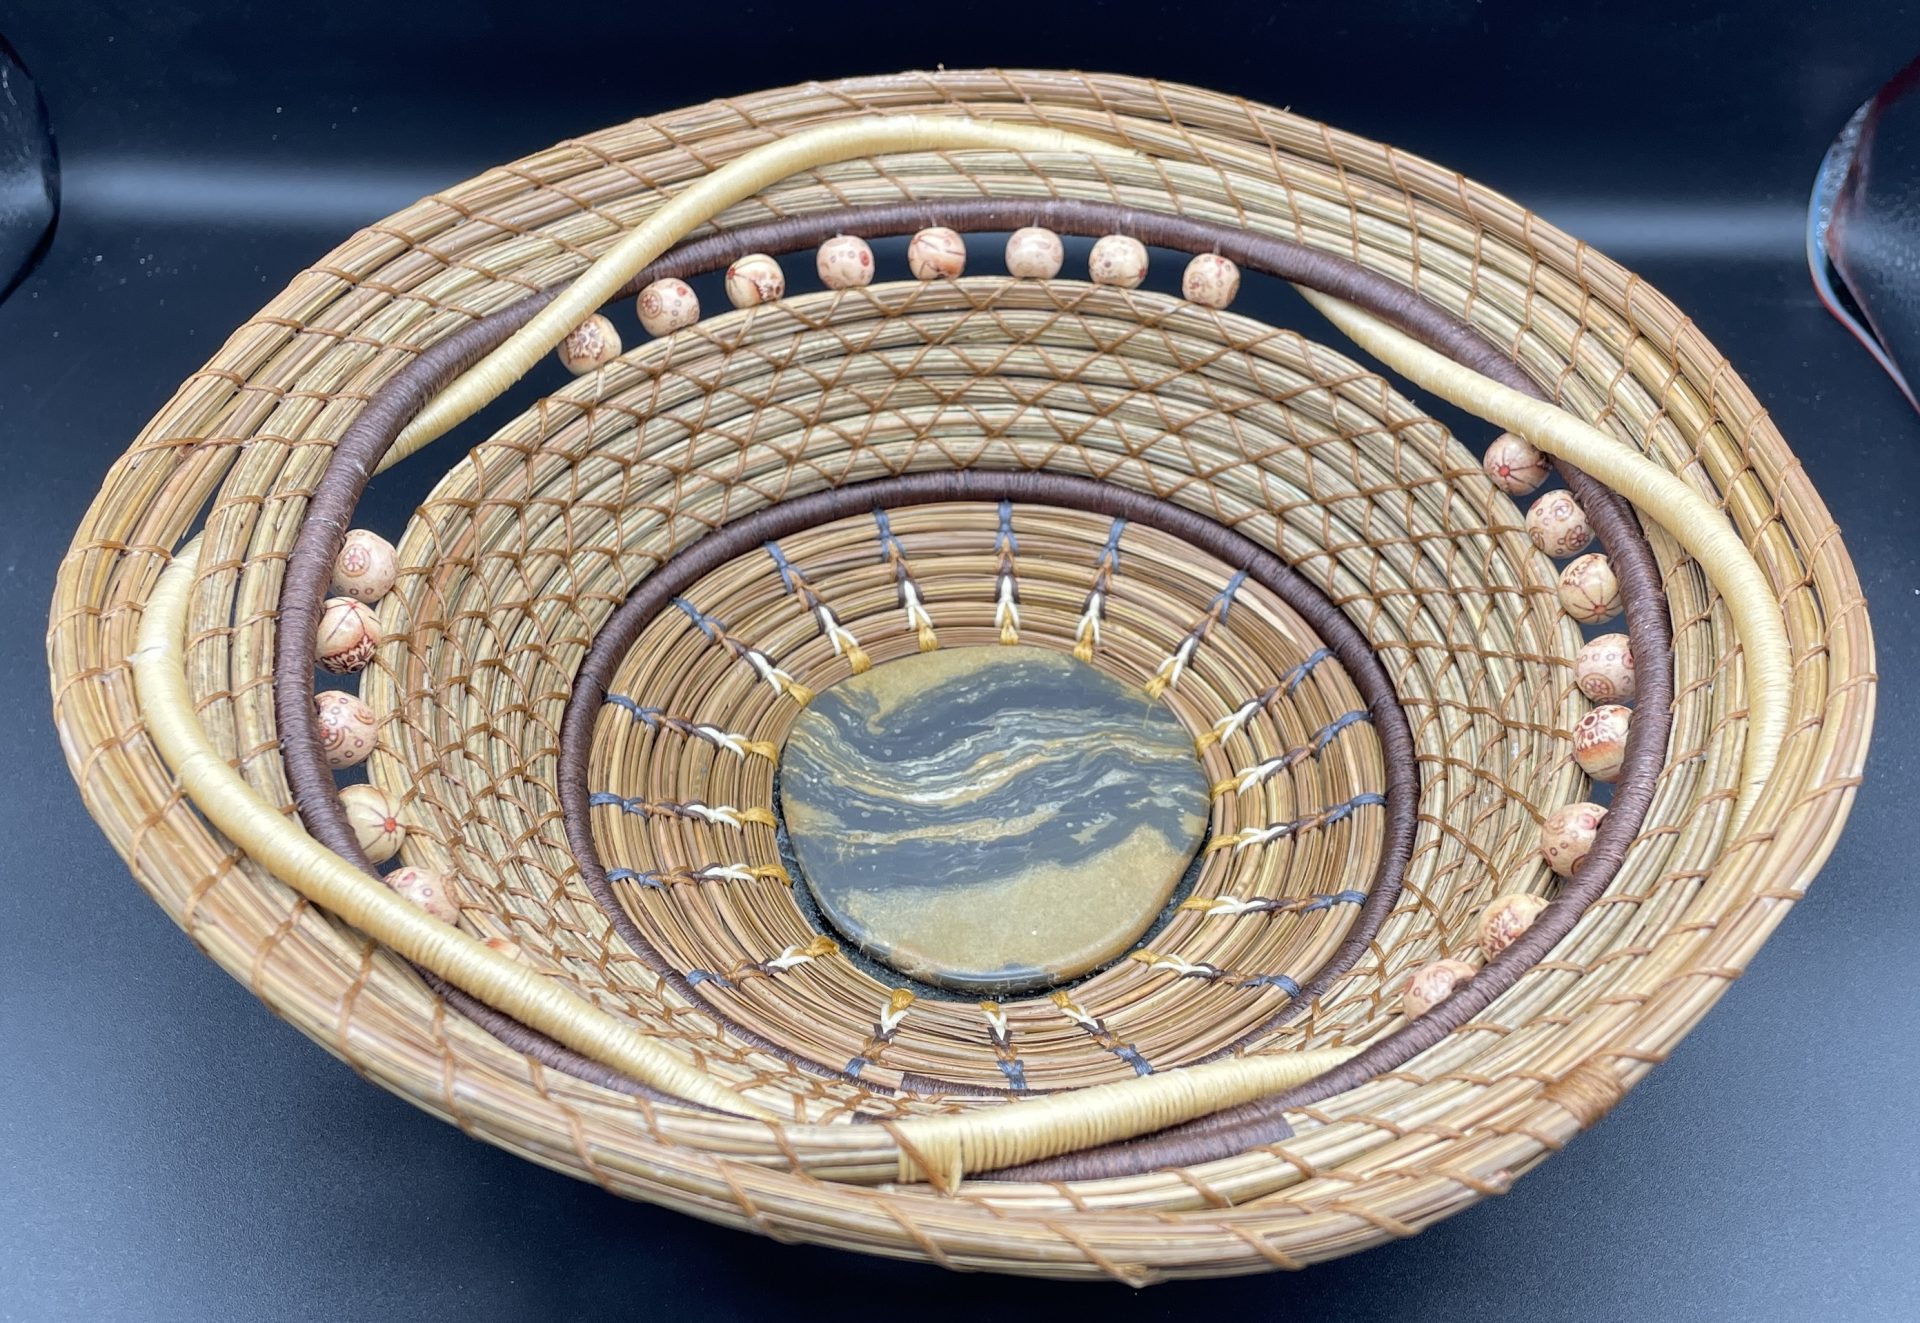 Intertwined pine needle basket